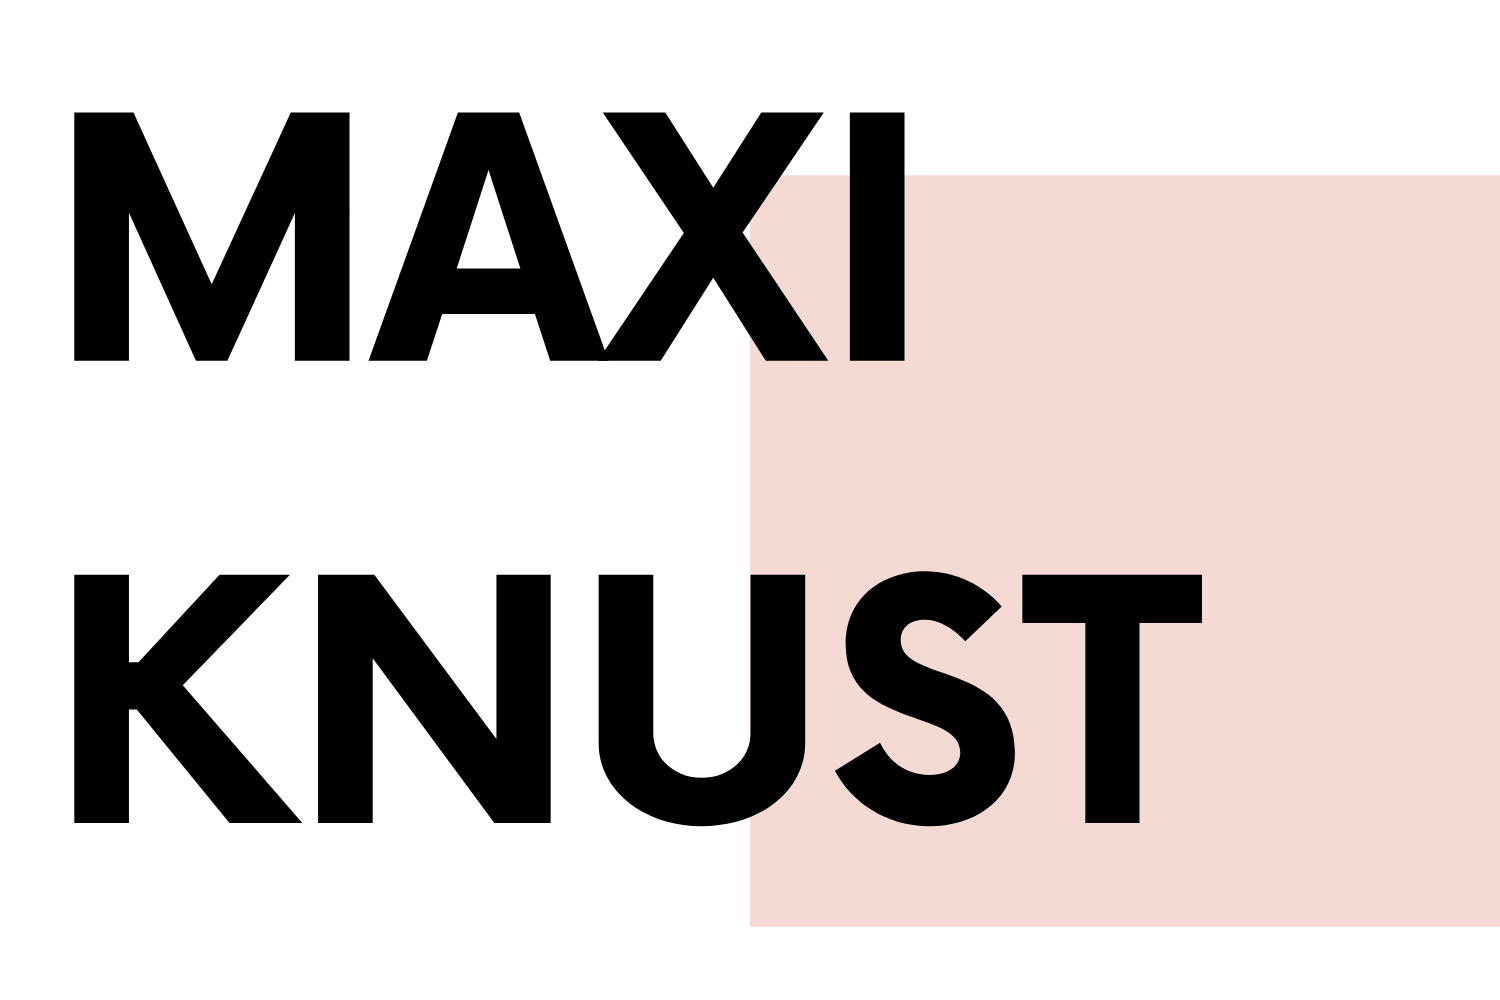 MAXI KNUST Digital Marketing Expert